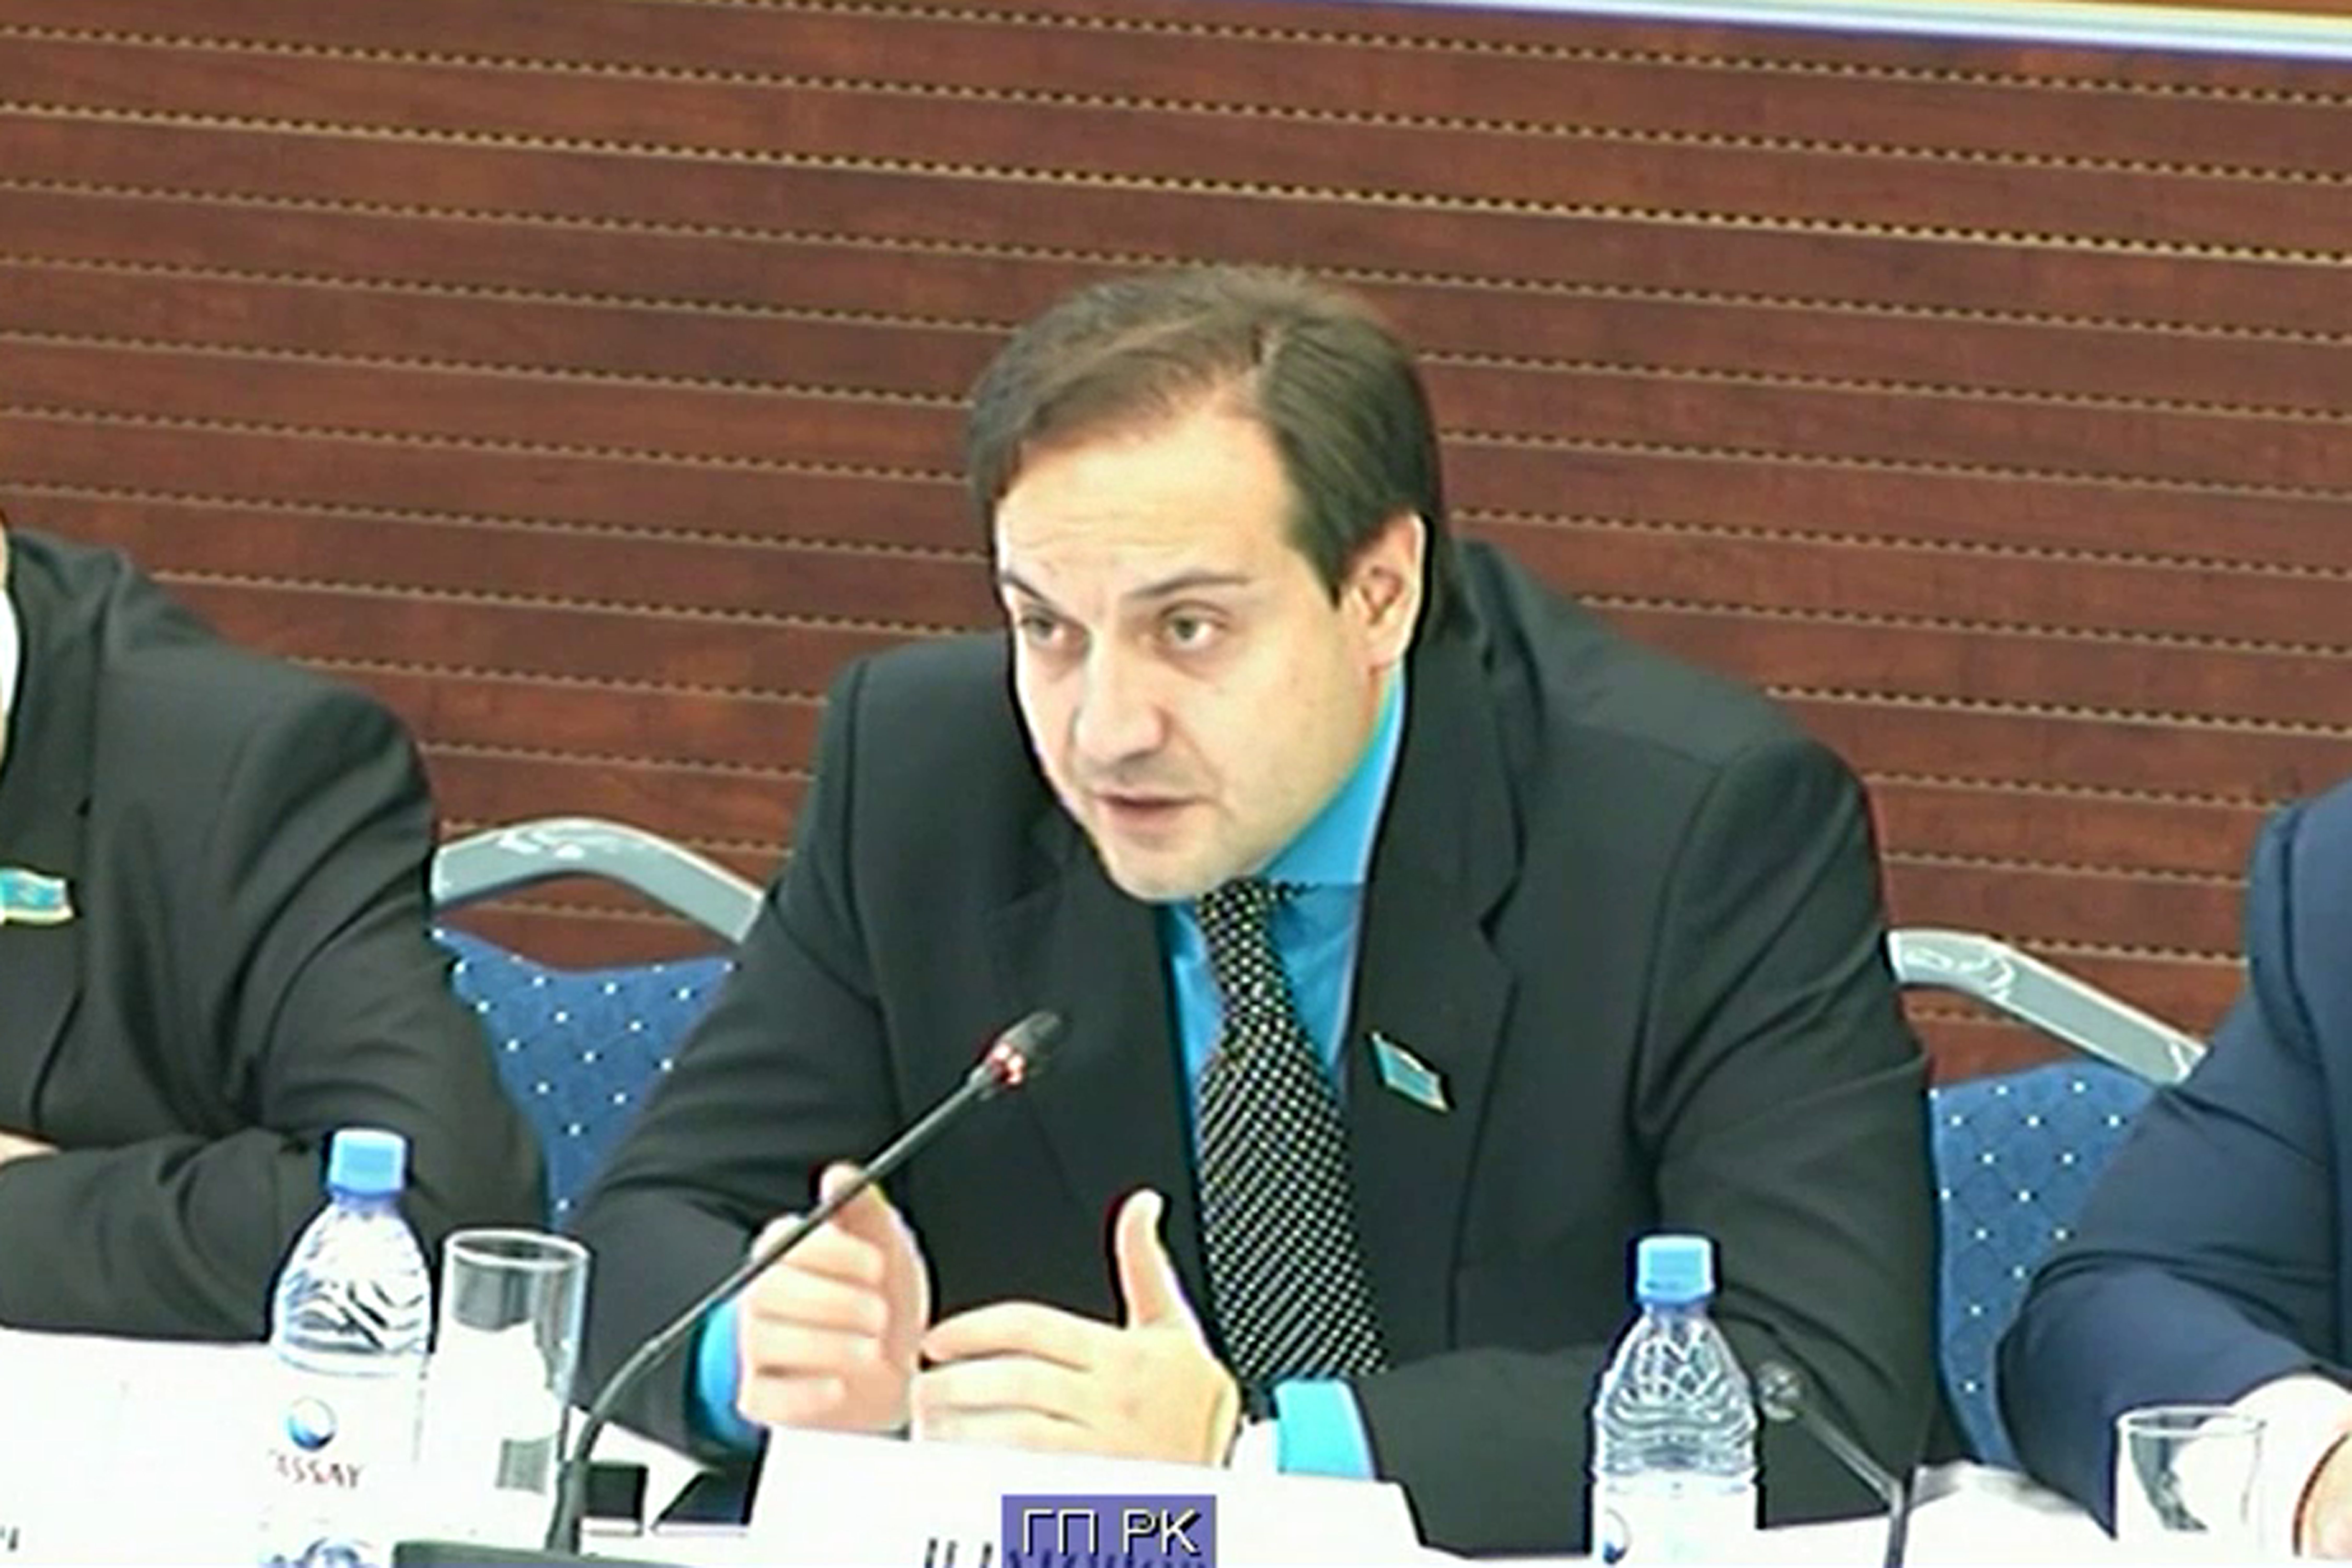 Заседание коллегии Генеральной прокуратуры Республики Казахстан по обсуждению проблемных вопросов противодействия самовольным захватам земель.